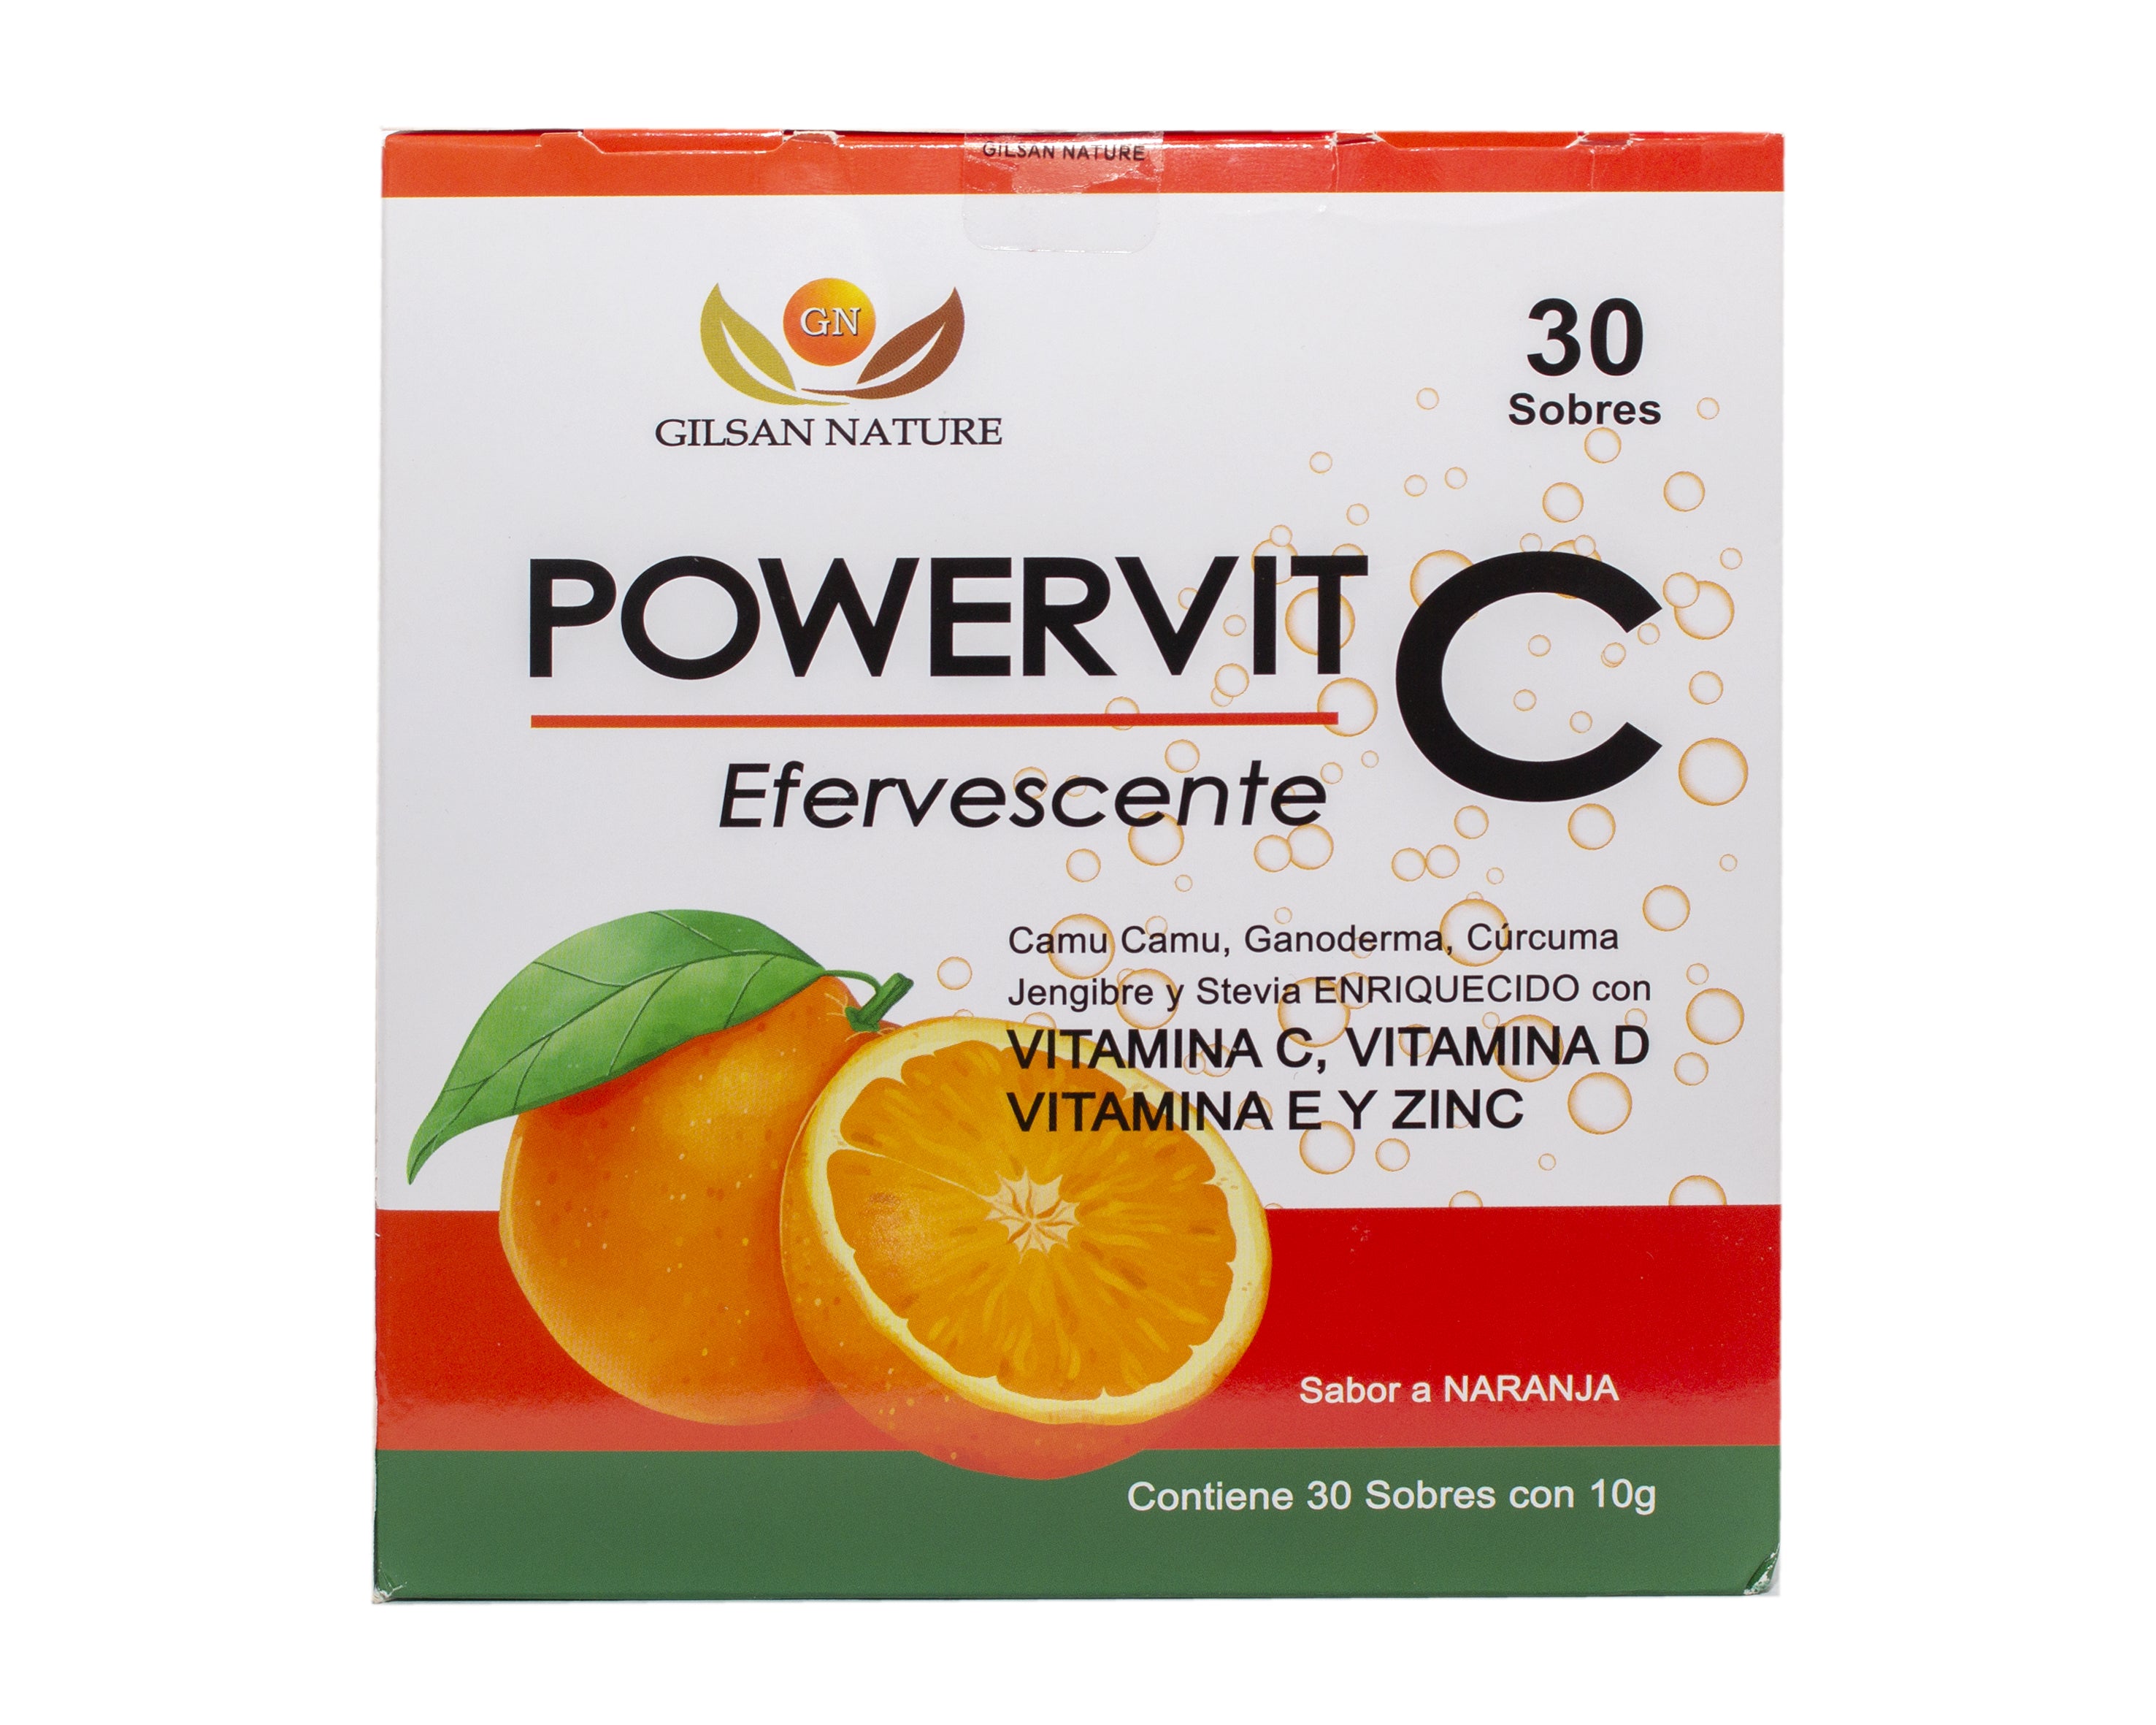 Vitamina C POWERVIT C (Efervescente) + cúrcuma y jengibre - Sistema óseo, Articular y Muscular